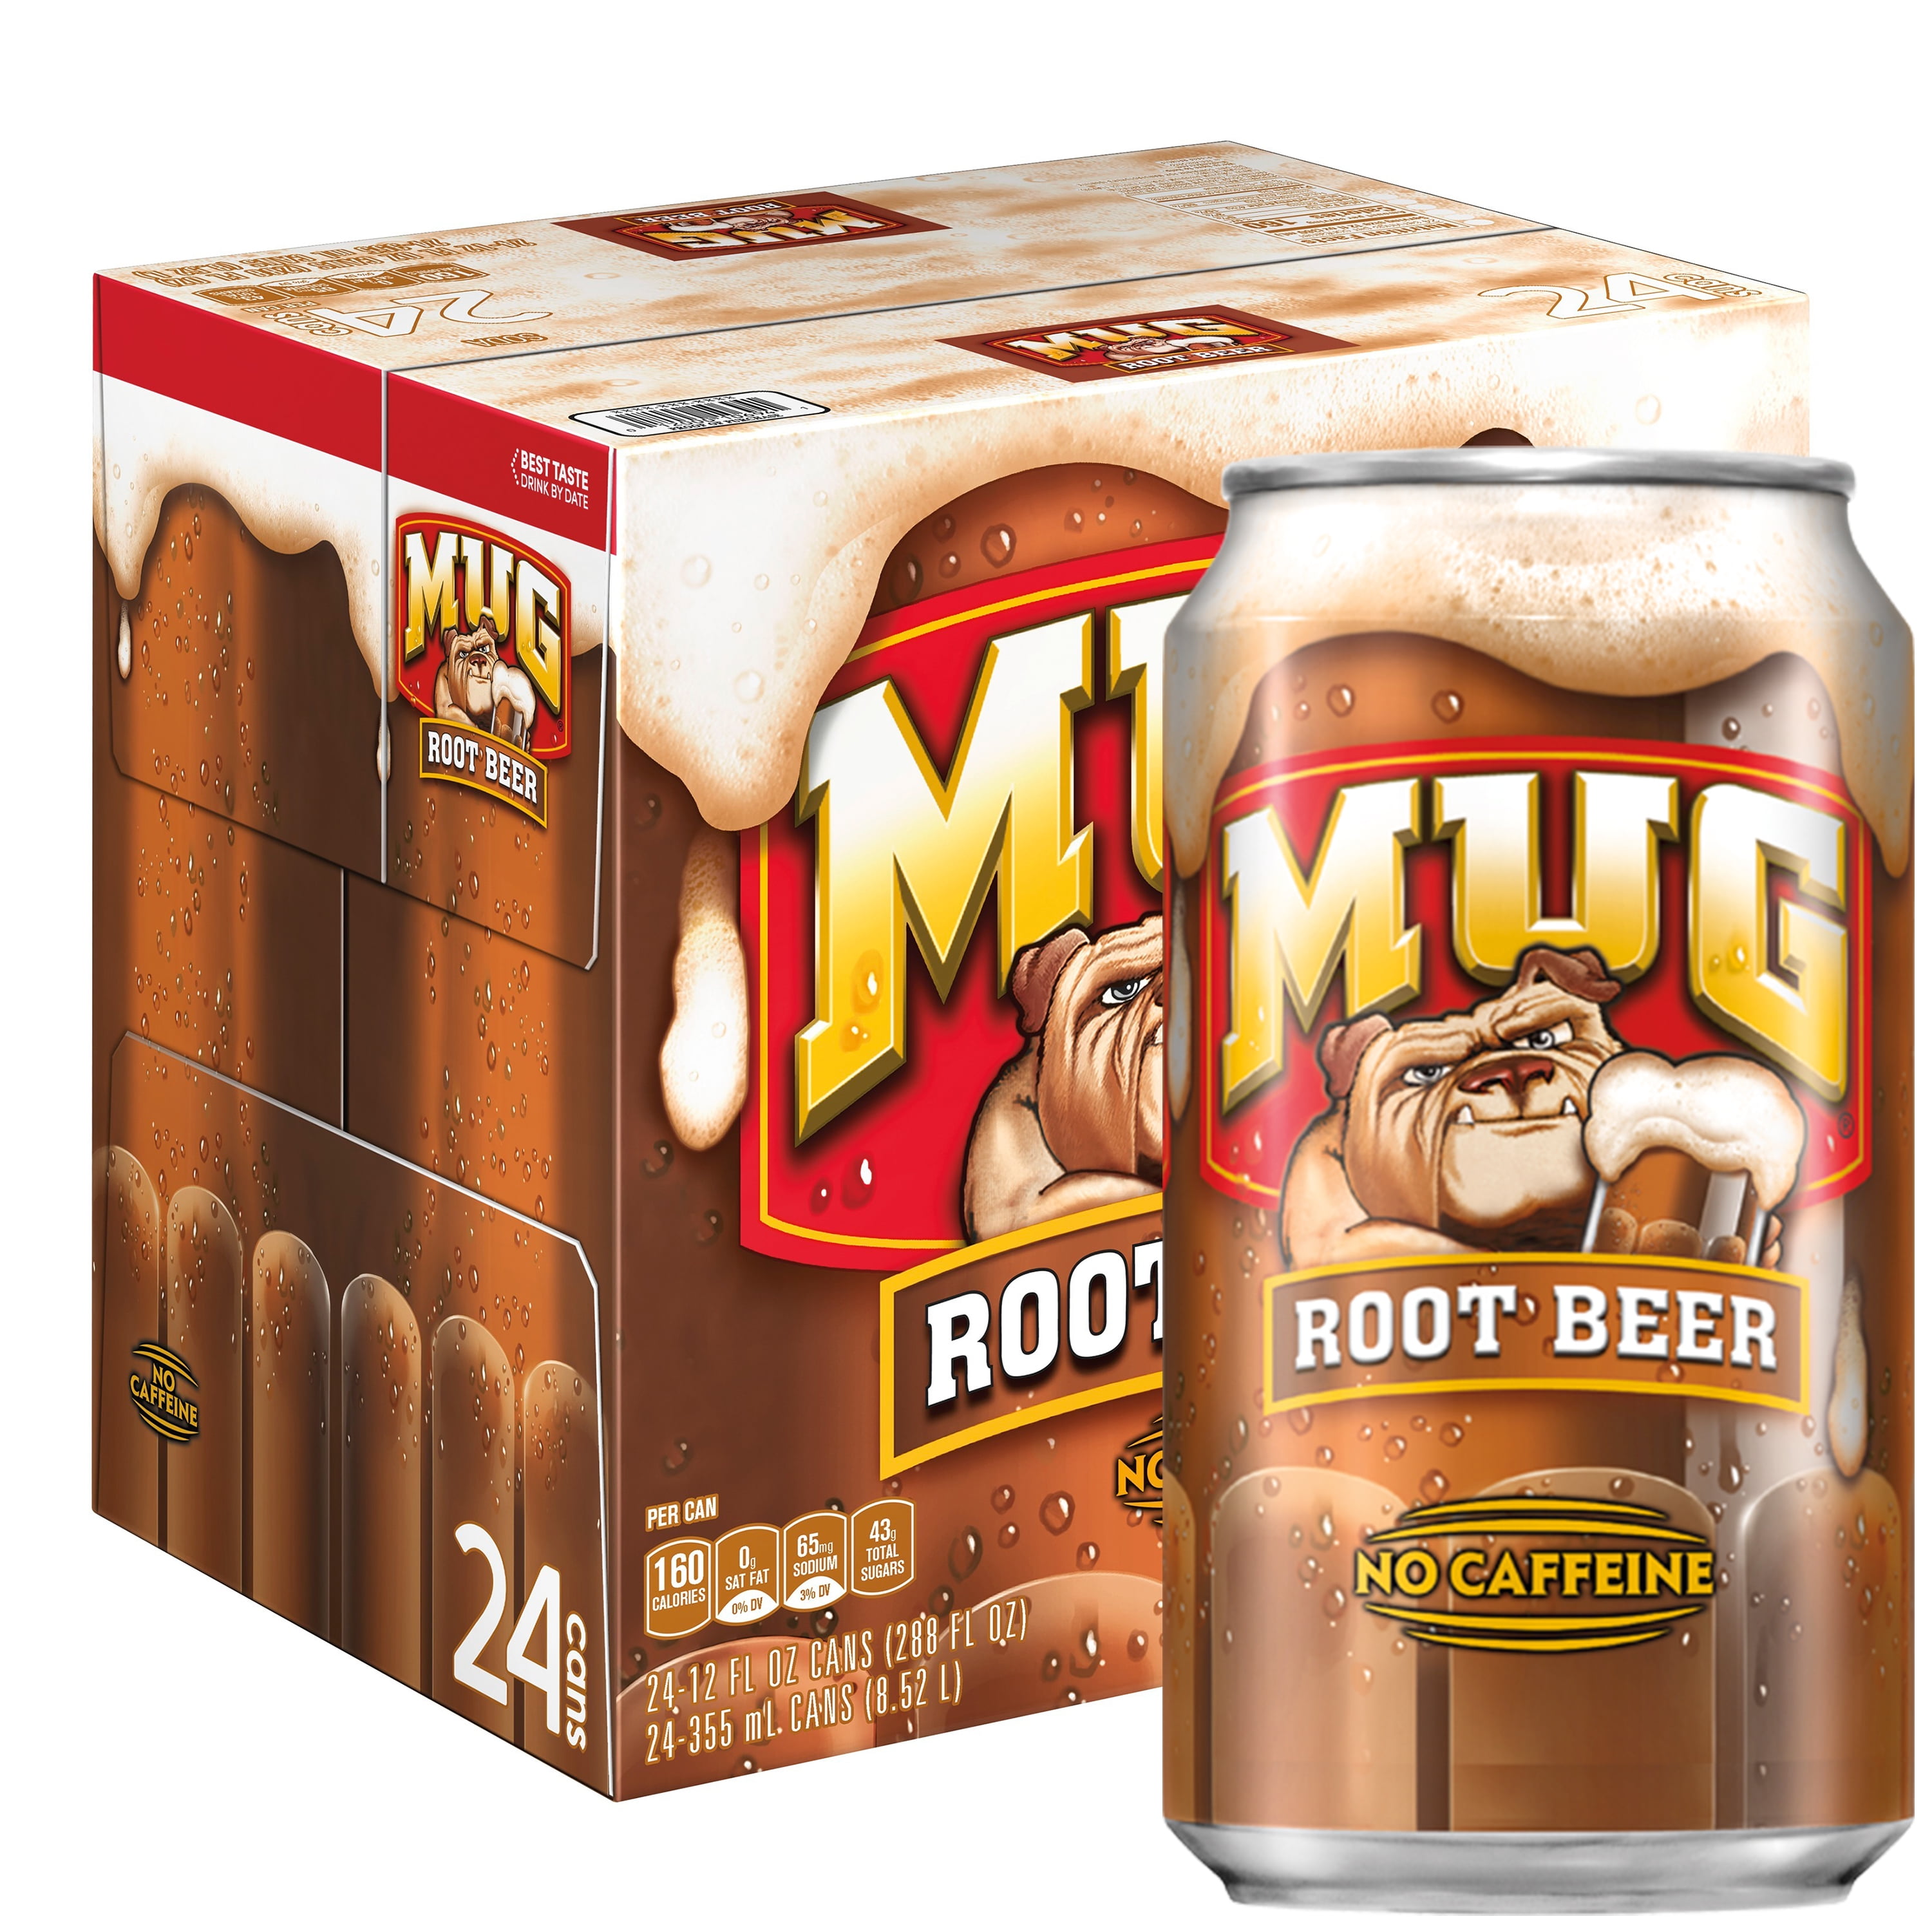 Mug root beer : r/rootbeer